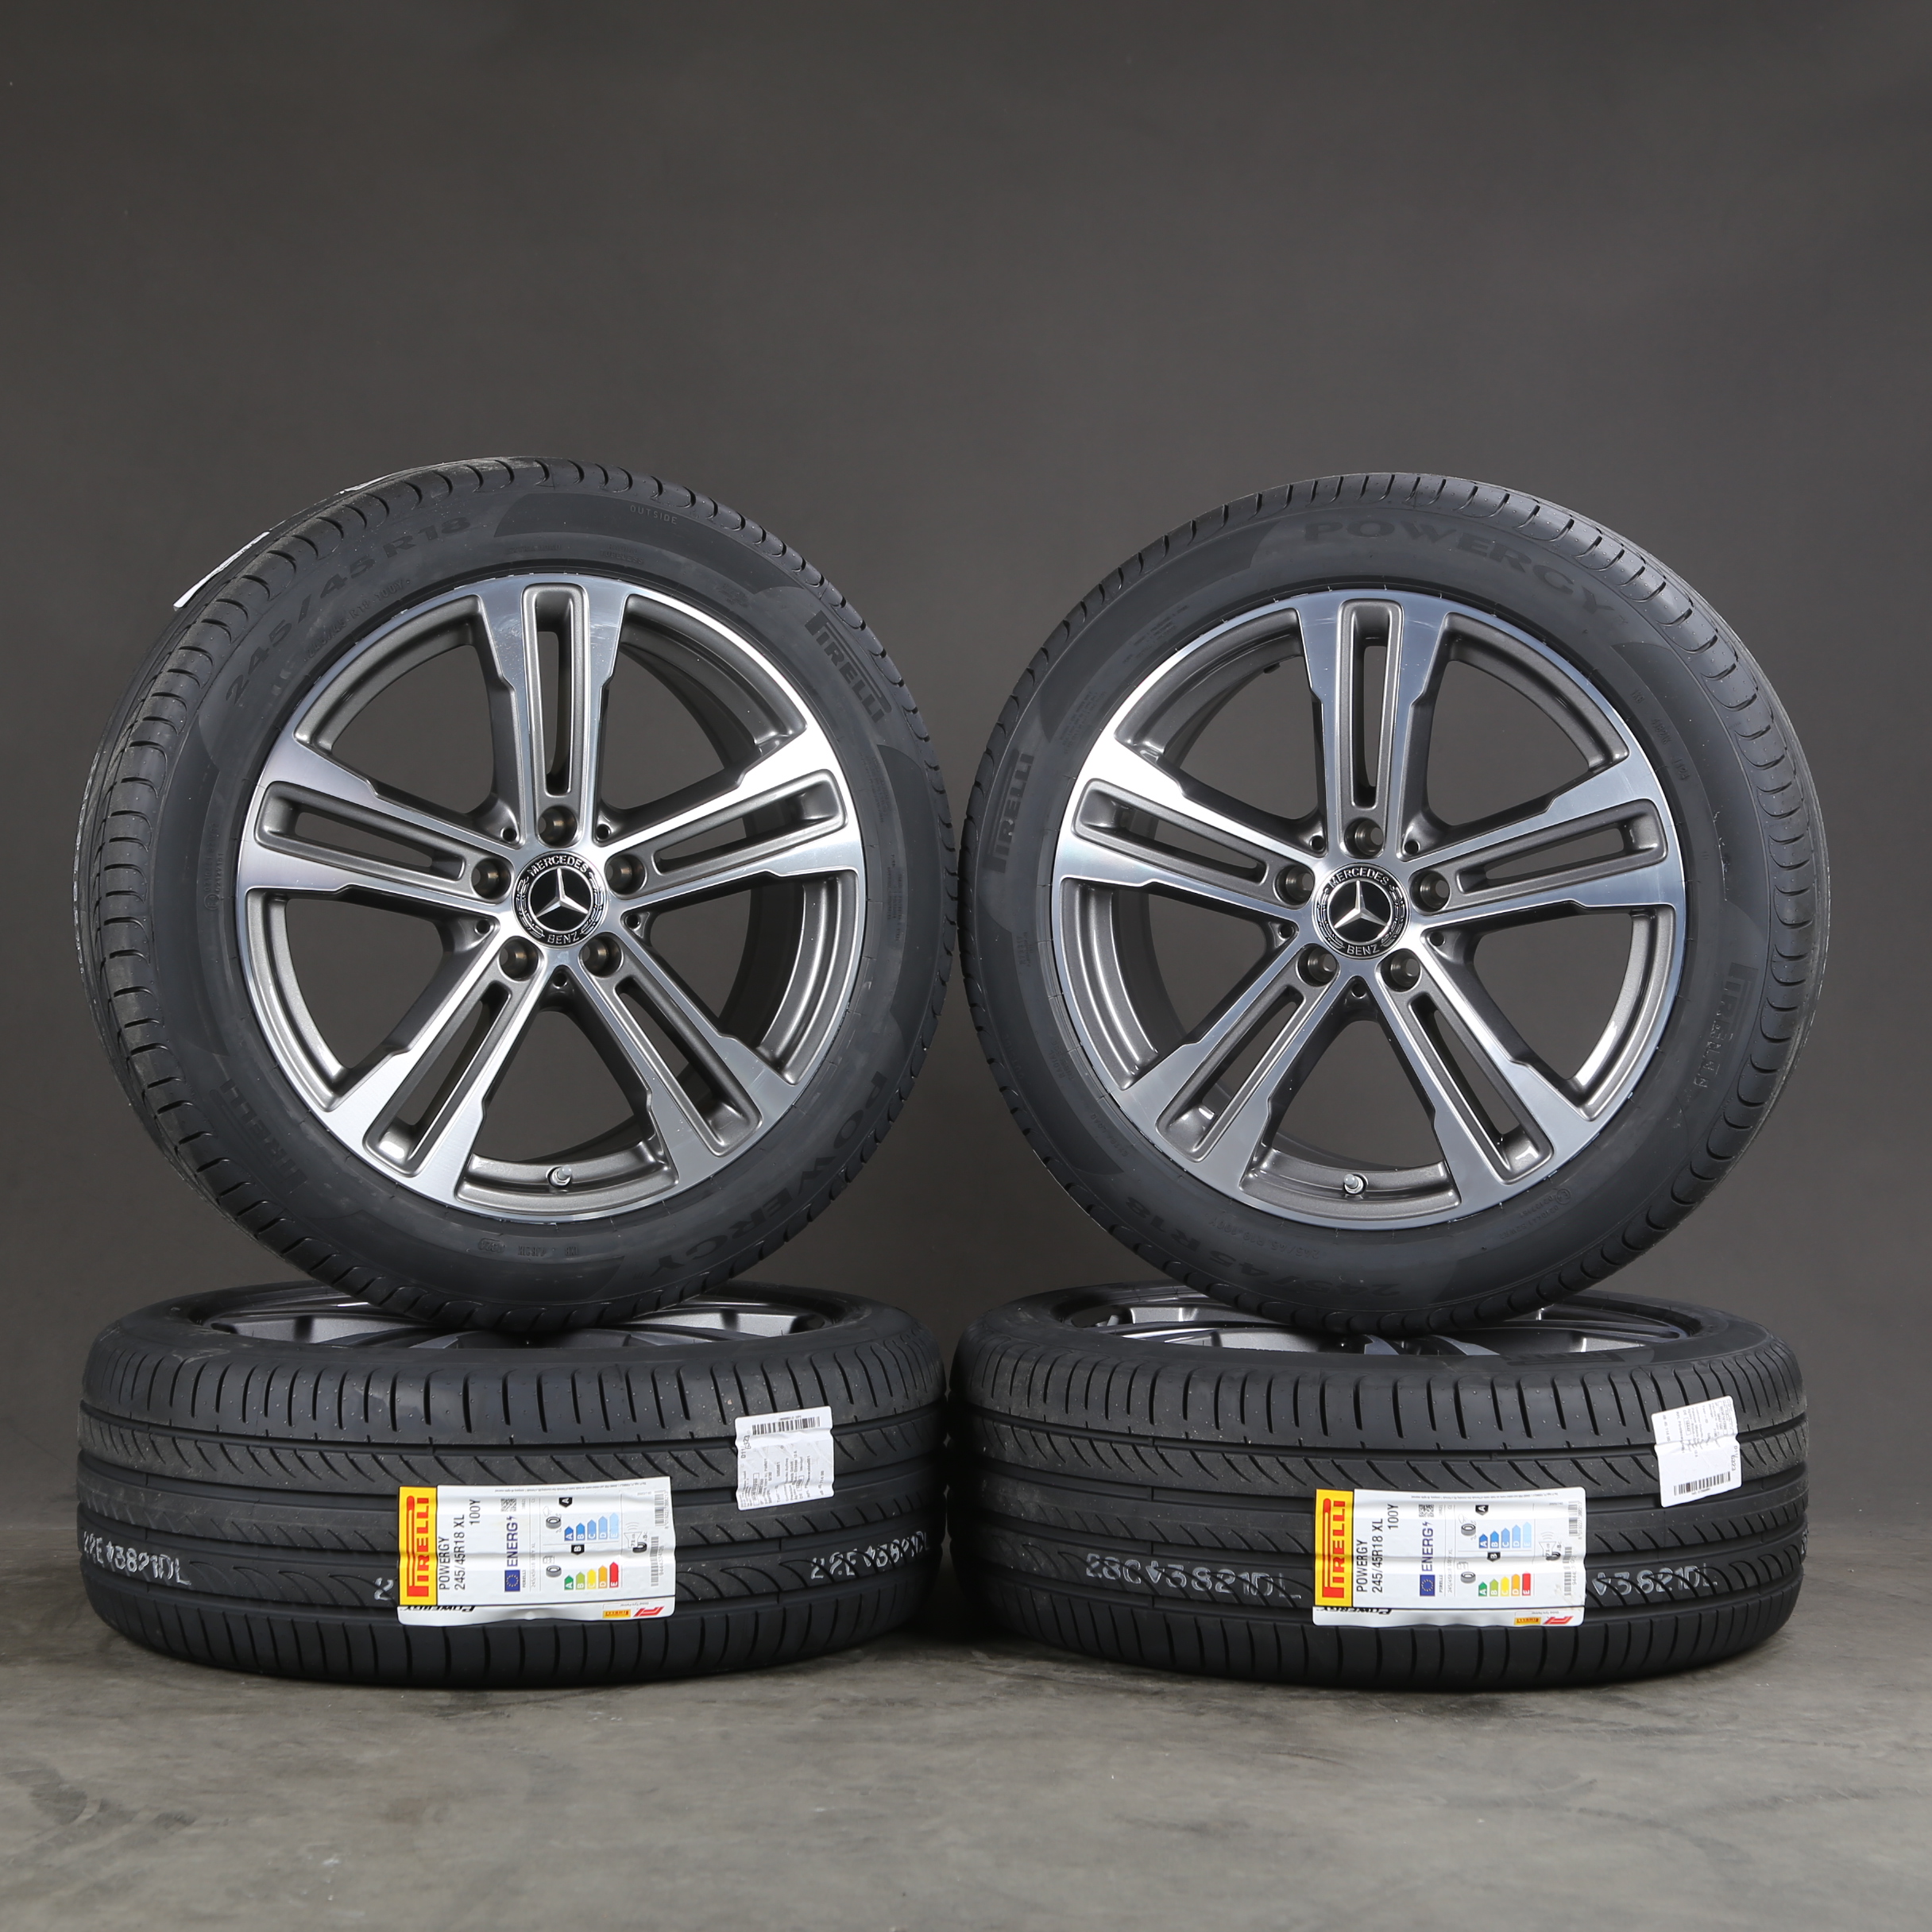 Neumáticos de verano originales de 18 pulgadas Mercedes A2134015700 Clase E W213 llantas de verano